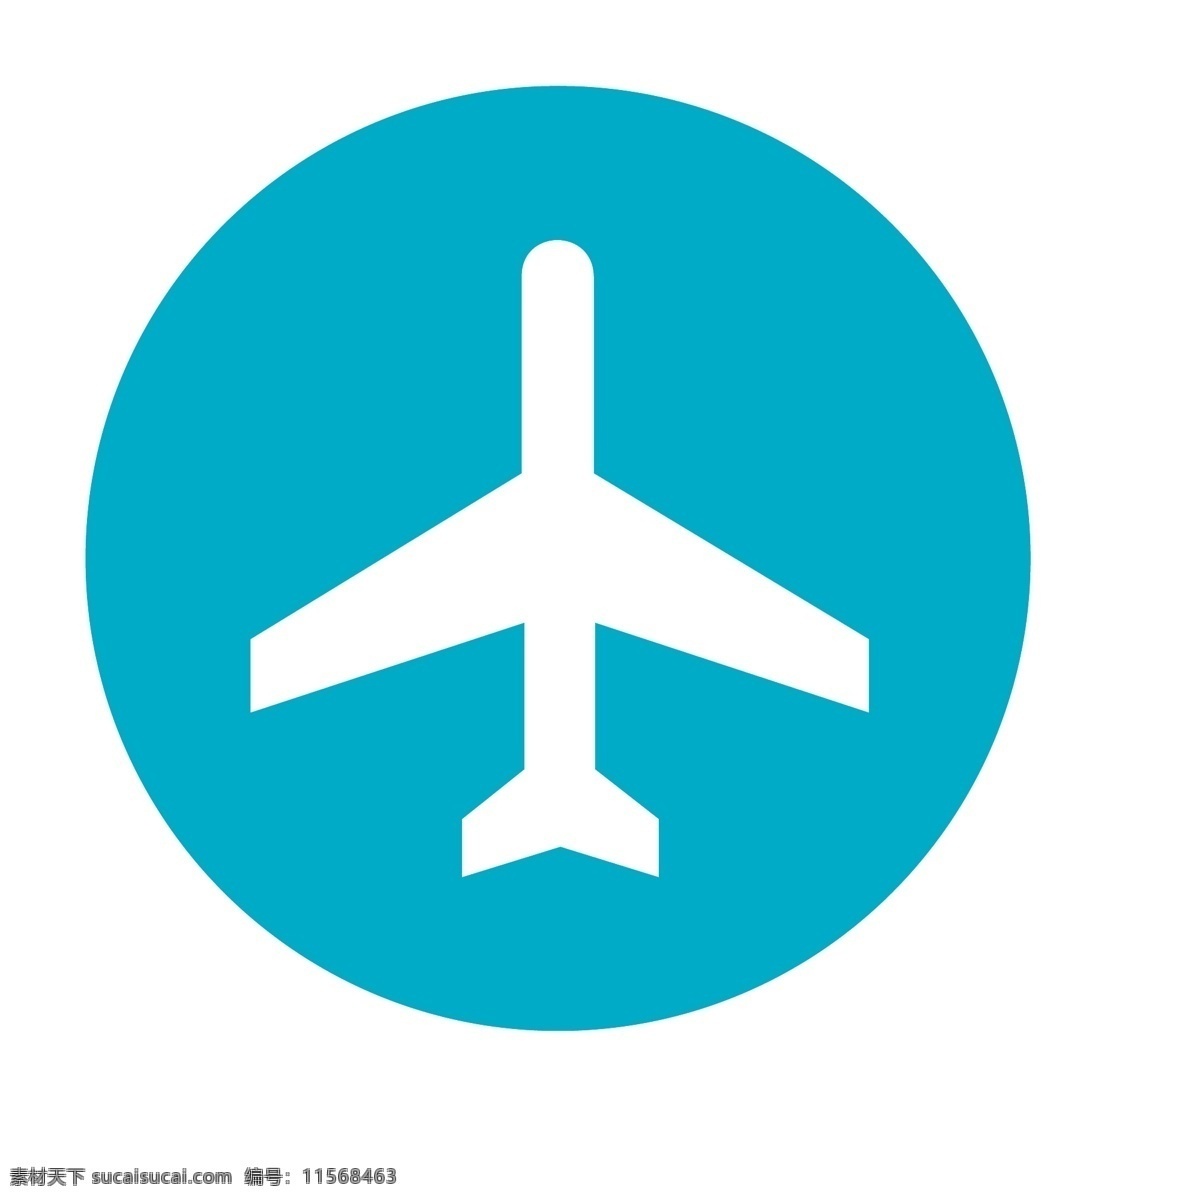 矢量飞机 矢量 飞机 机场标志 飞行 飞行模式 标志图标 其他图标